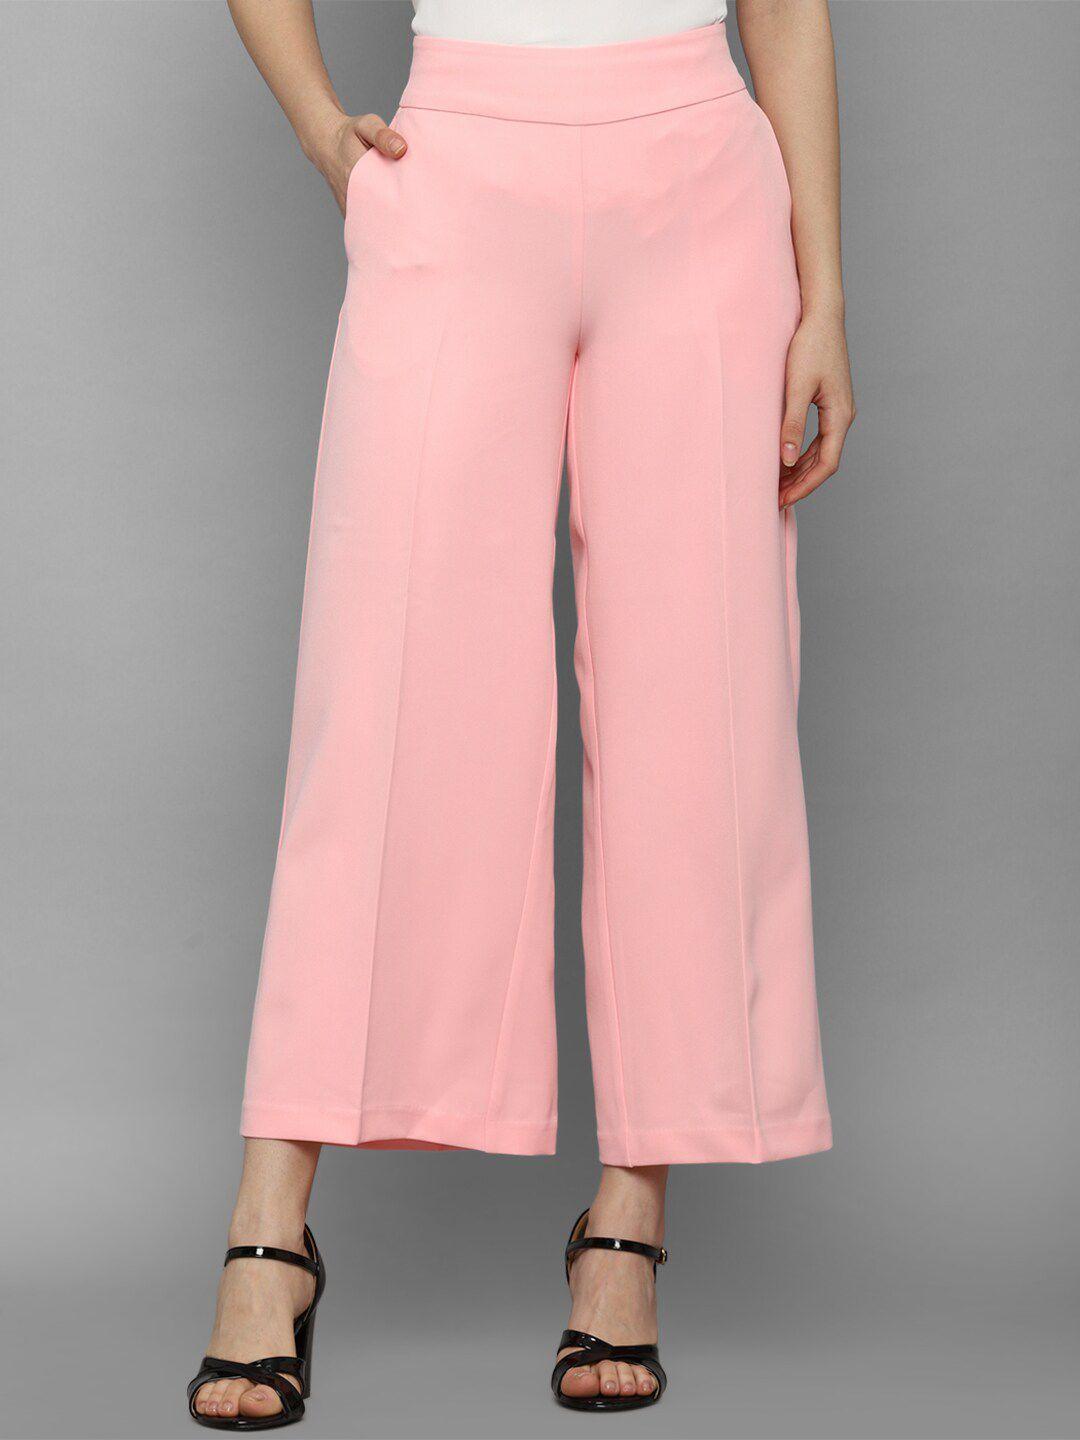 allen-solly-woman-women-pink-trousers